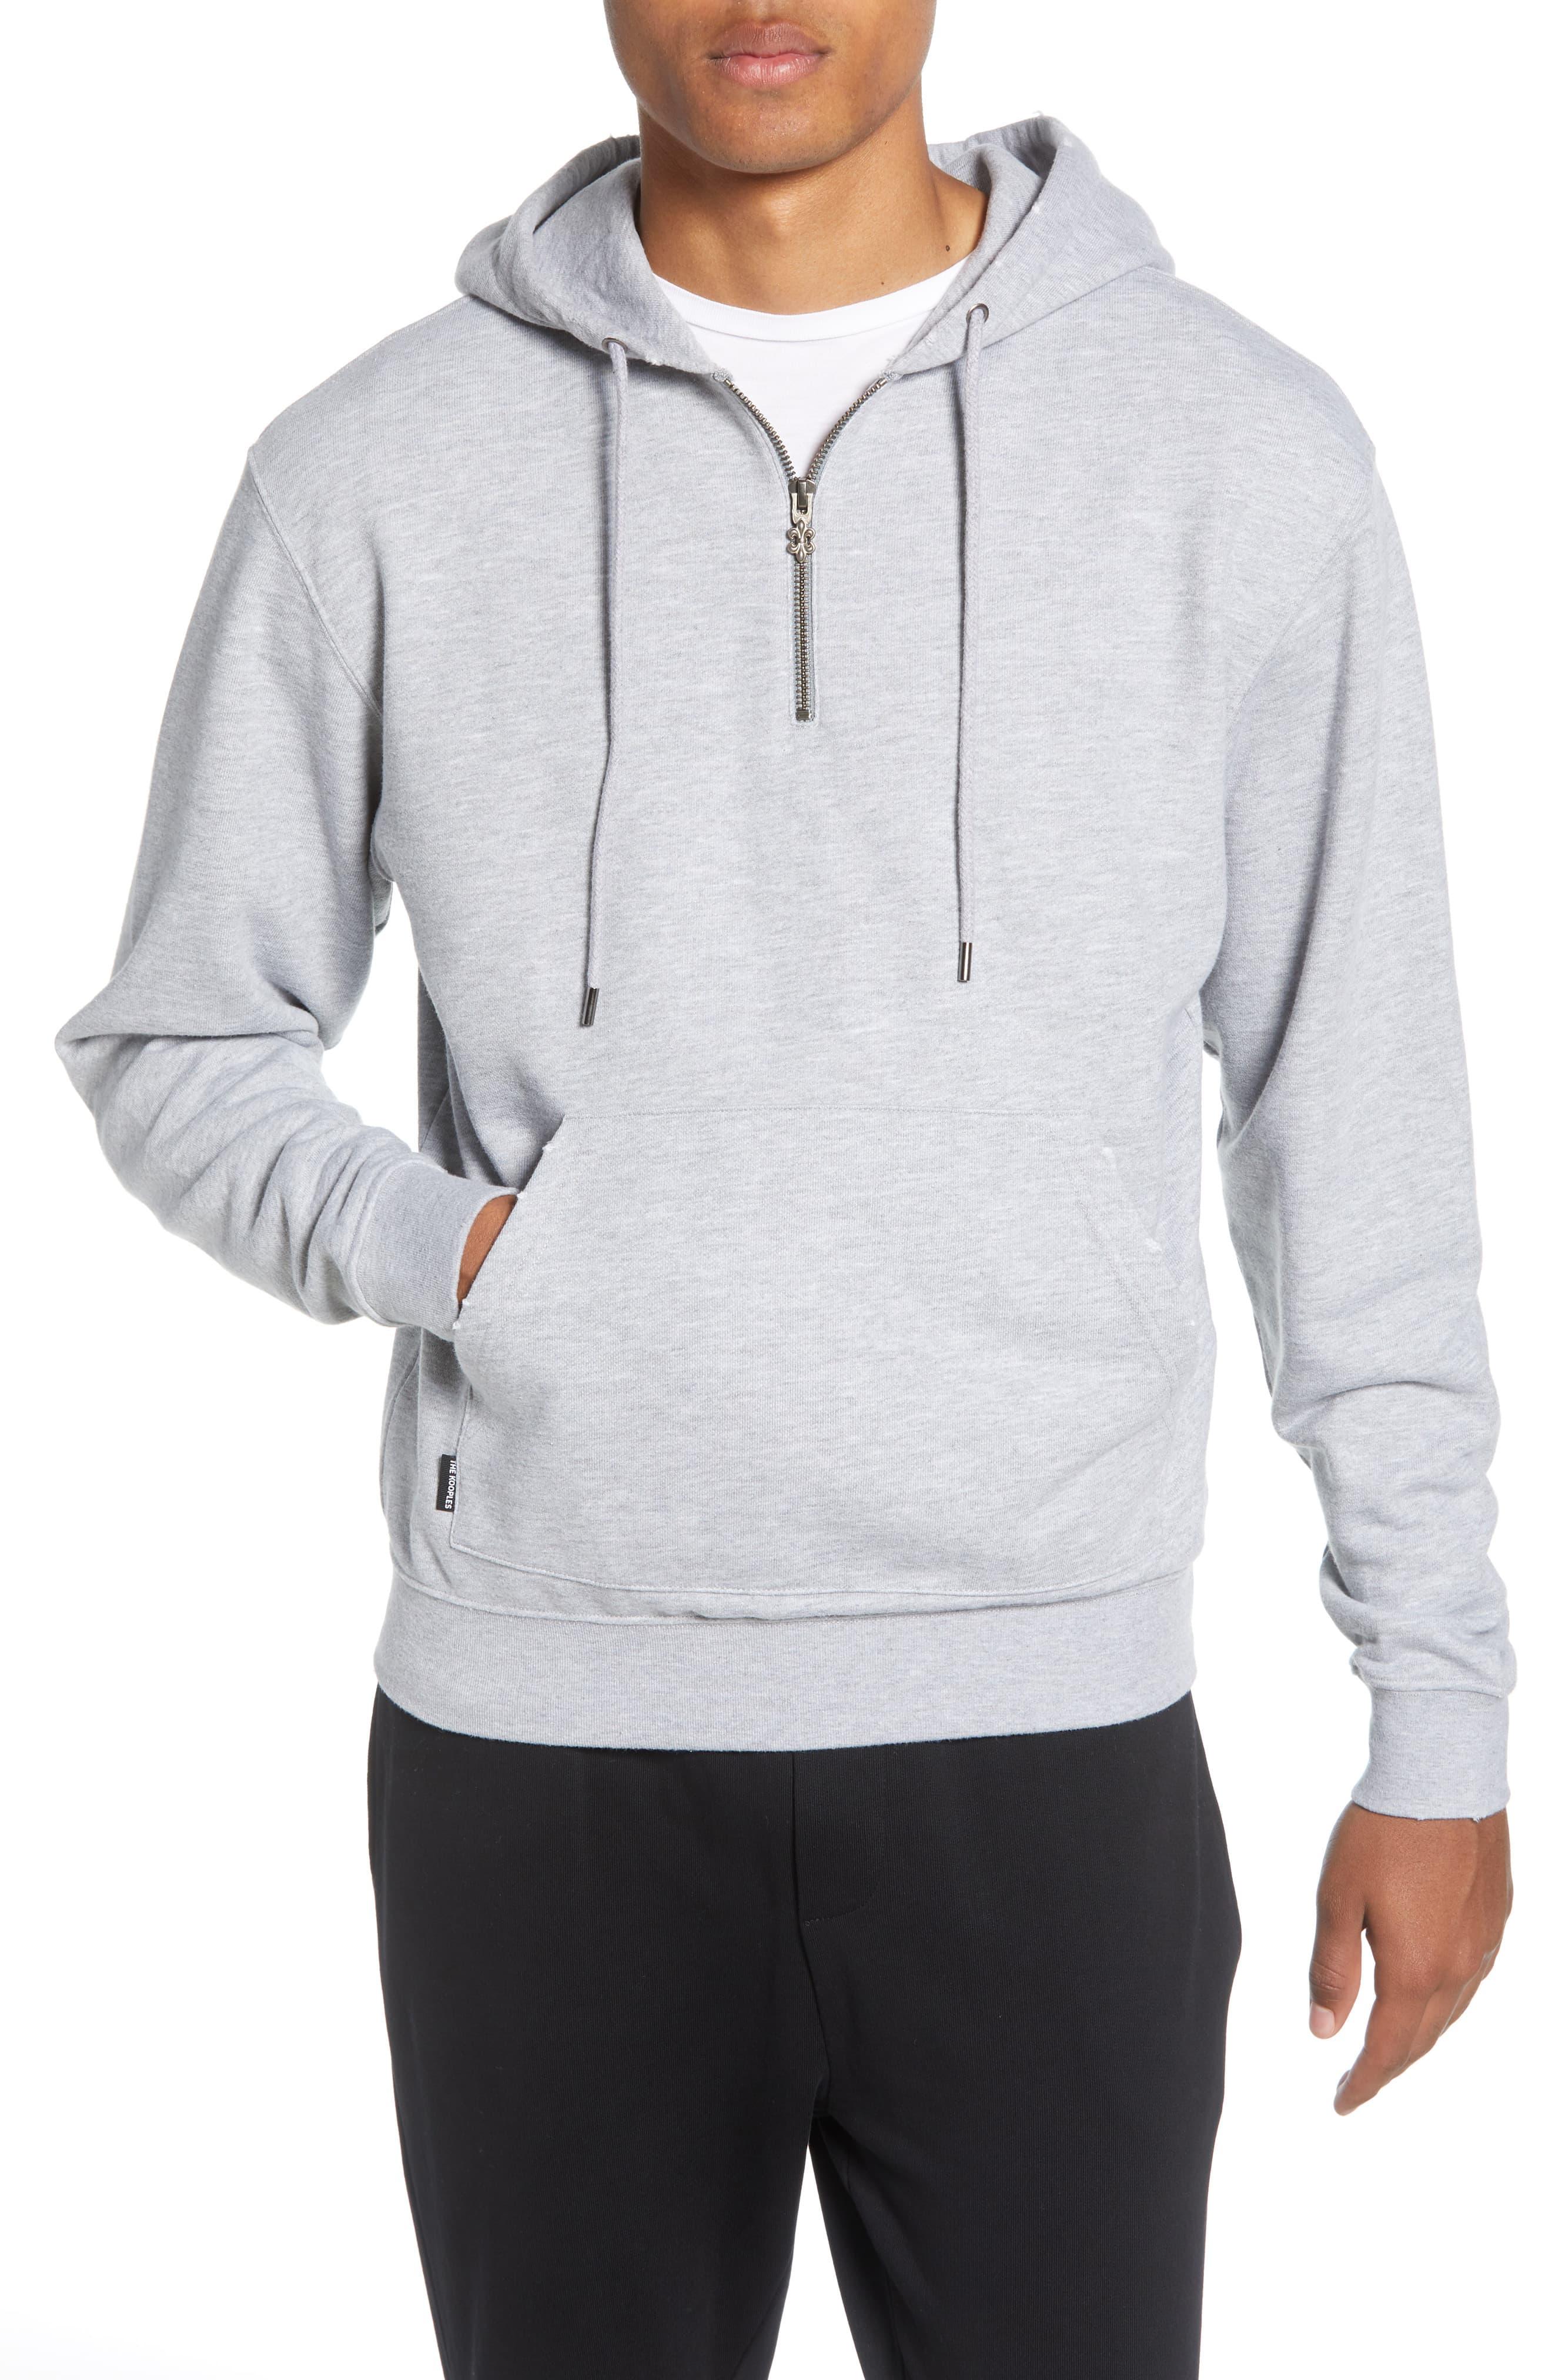 The Kooples Regular Fit Quarter Zip Pullover Hoodie in Gray for Men - Lyst